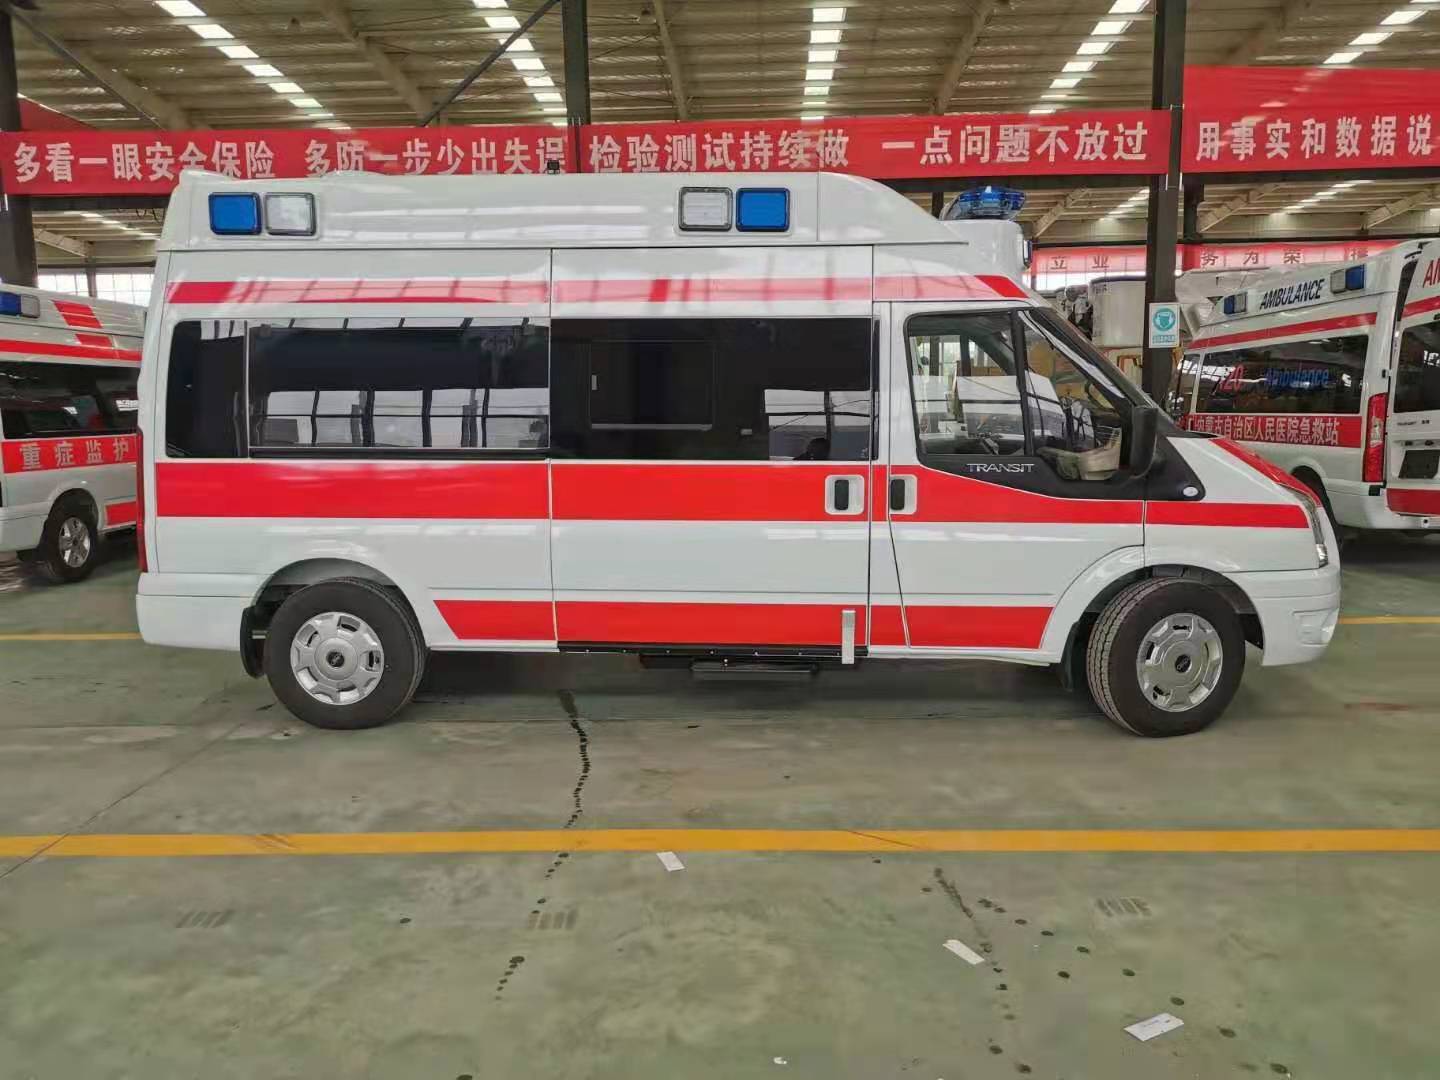 乌海急救中心120救护车出租医帮扶公司